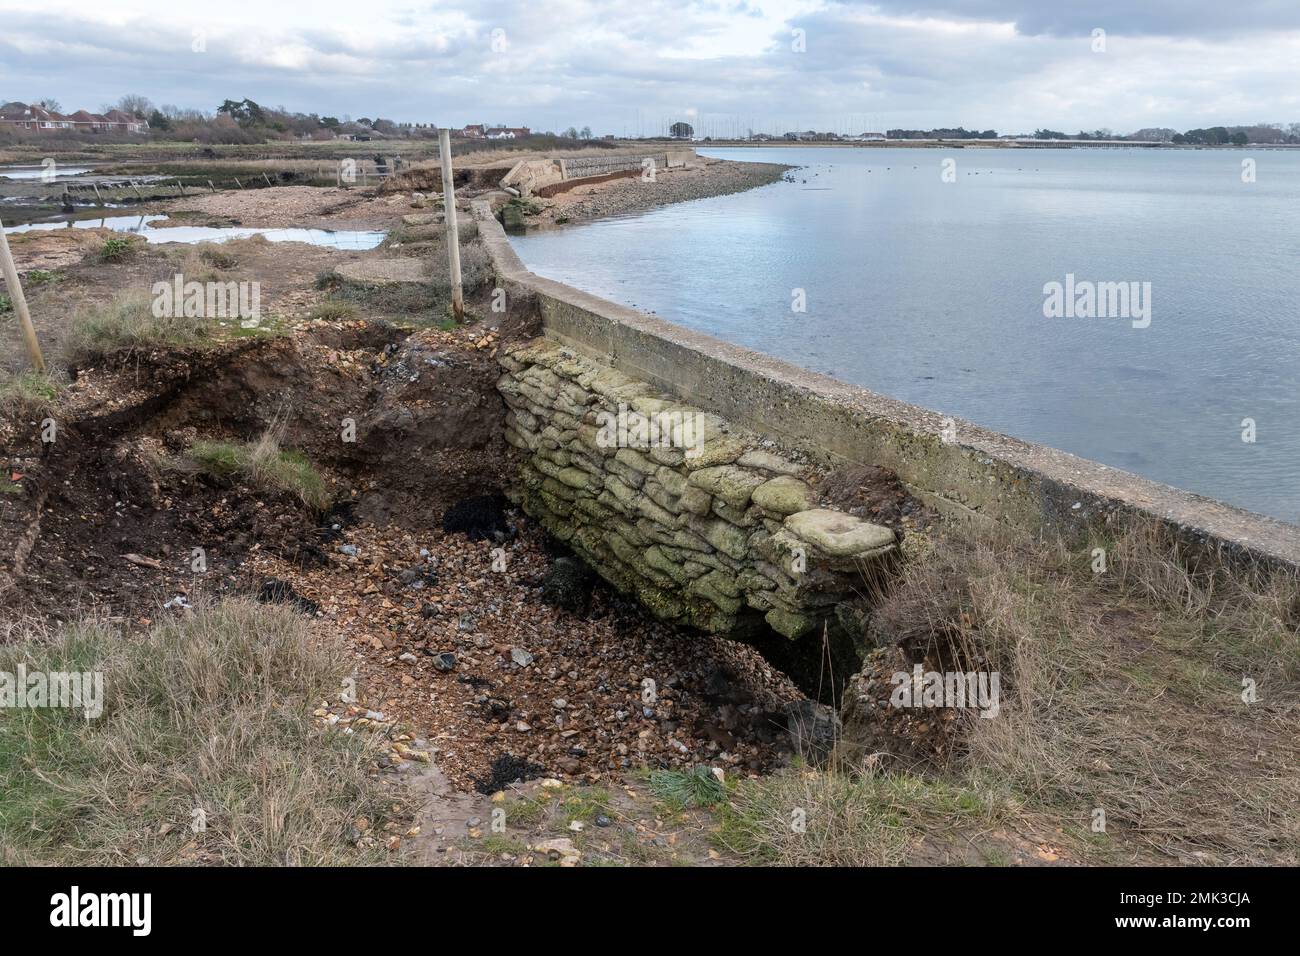 L'érosion côtière a causé une brèche dans la digue en 2020 et la perte du sentier, Langstone Harbour, à la réserve naturelle de Southmoor, Hampshire, Angleterre, Royaume-Uni Banque D'Images